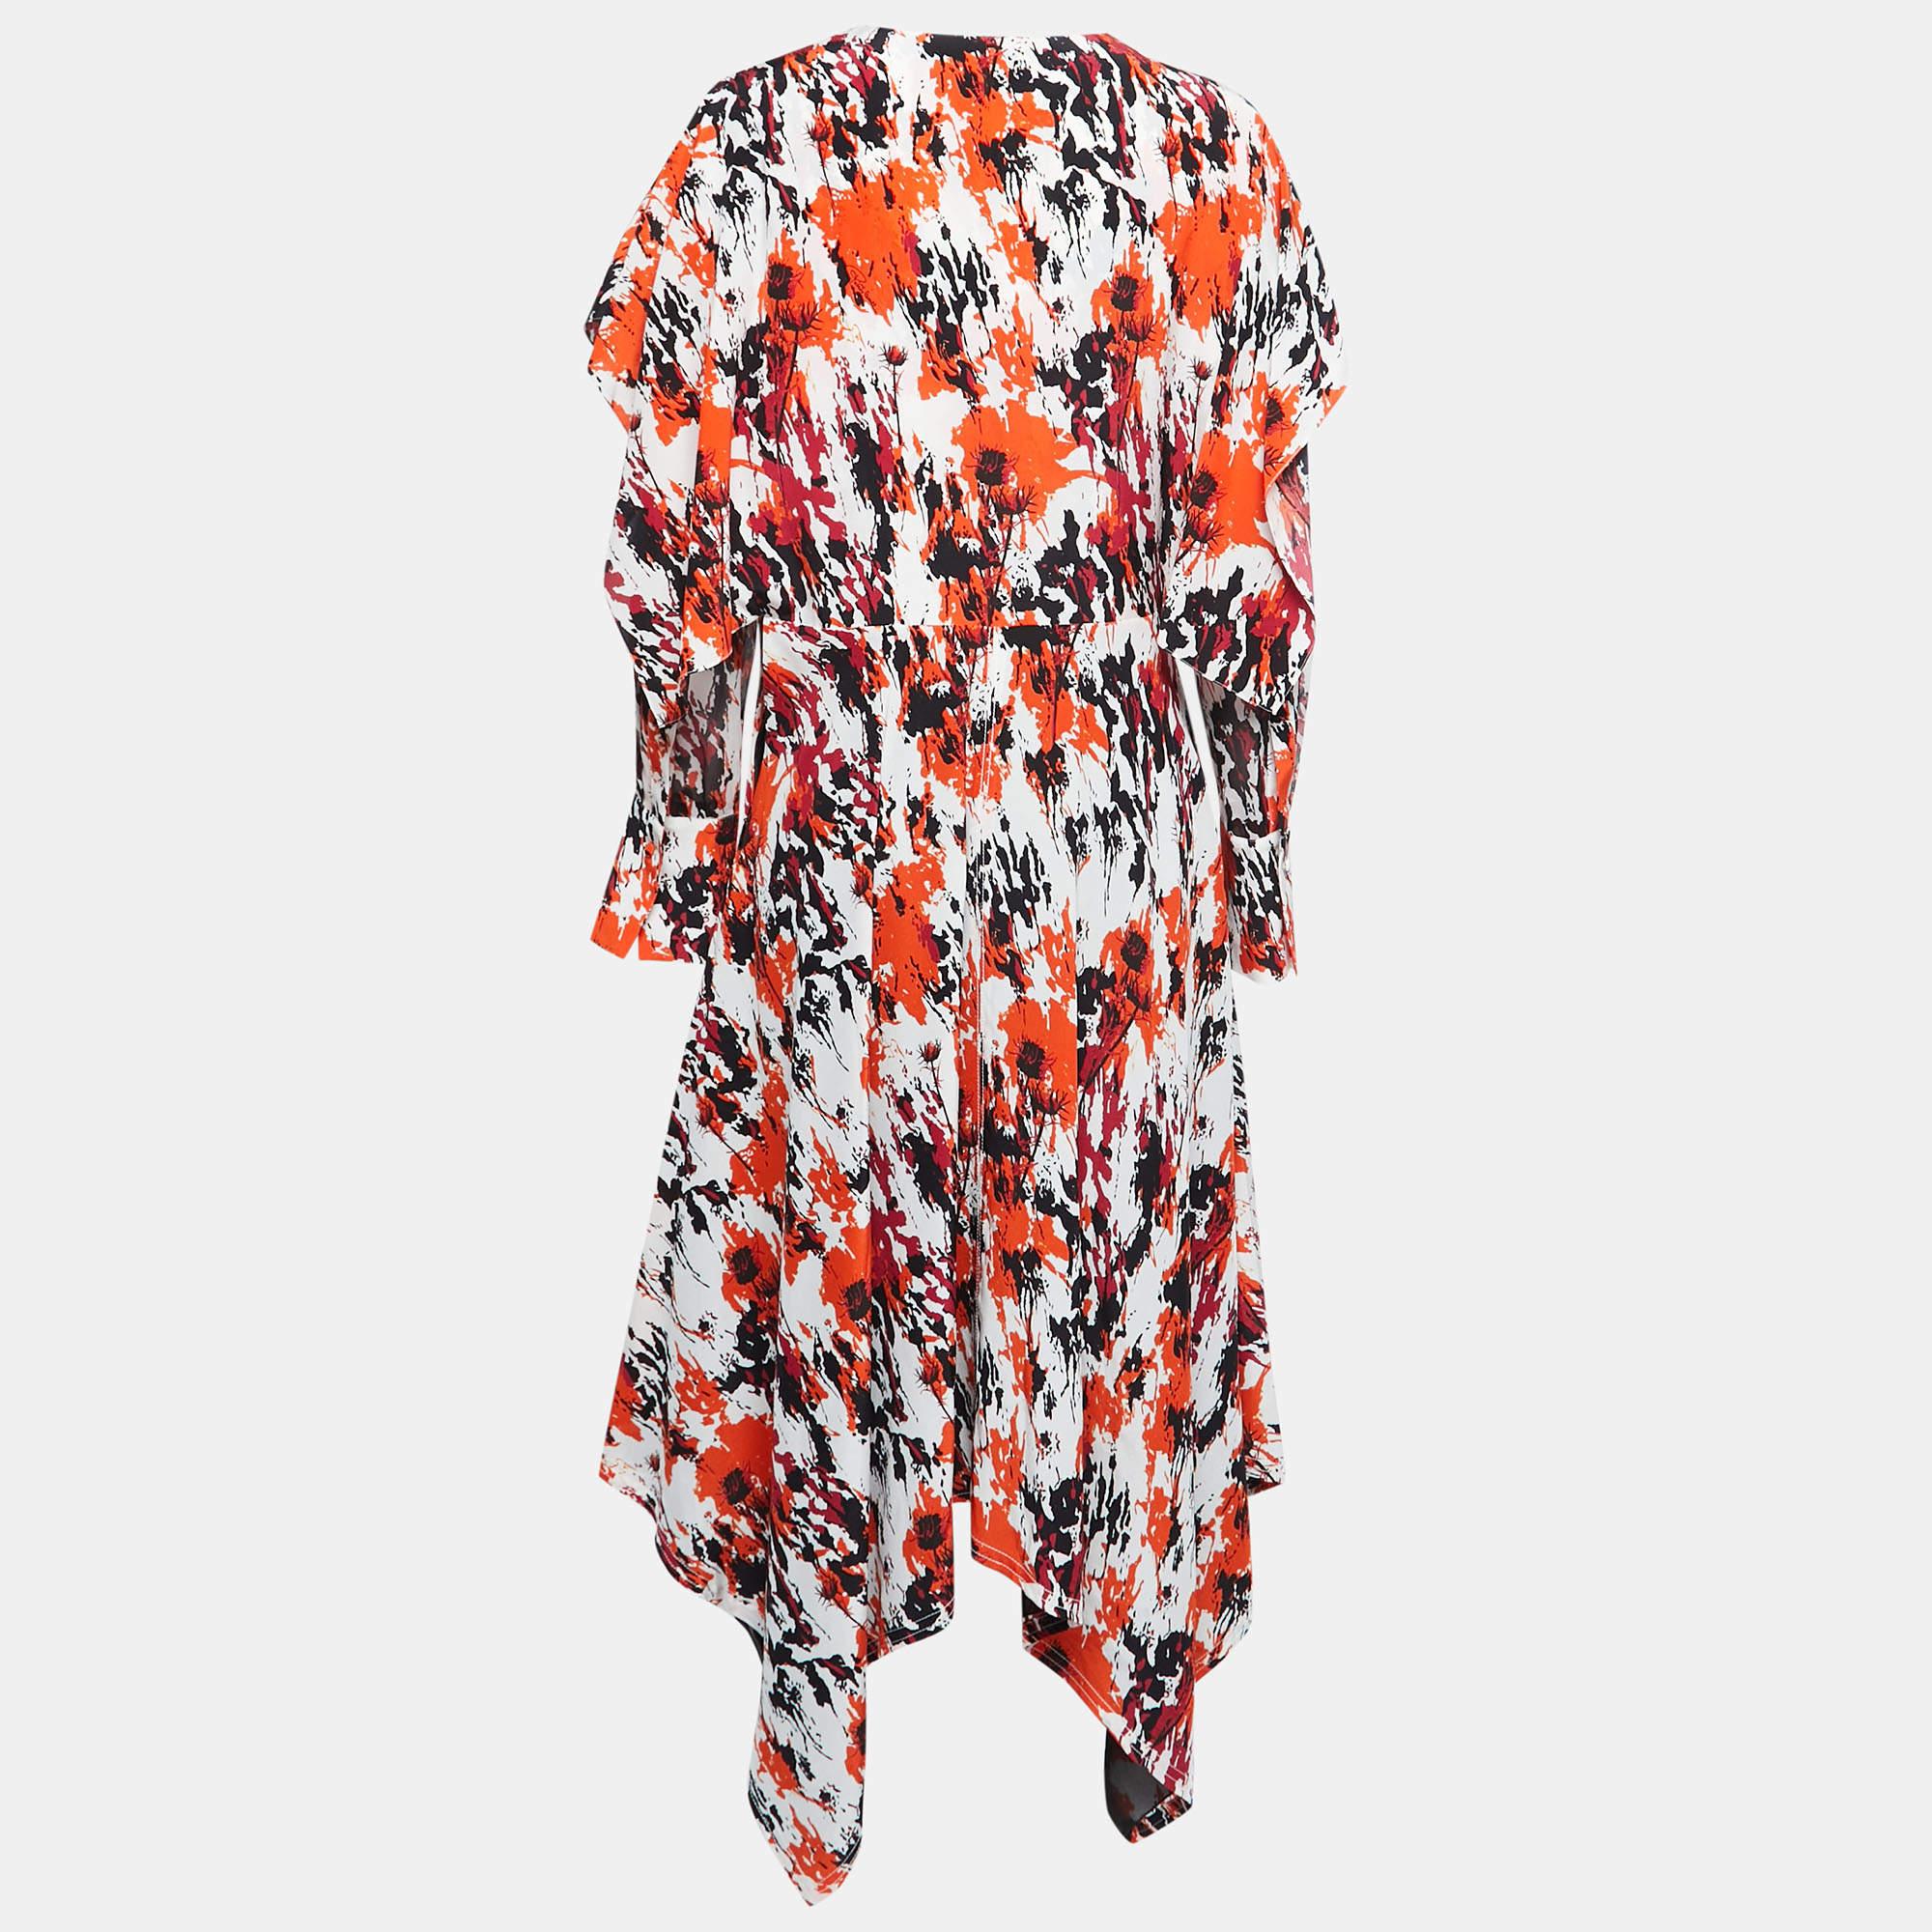 Verleihen Sie Ihrem Sommeroutfit mit diesem wunderschönen Kleid von Roberto Cavalli einen Hauch von Eleganz. Dieses Kleid kann mit auffälligen Accessoires kombiniert werden, um einen schicken Look zu erhalten.

Enthält: Preisschild